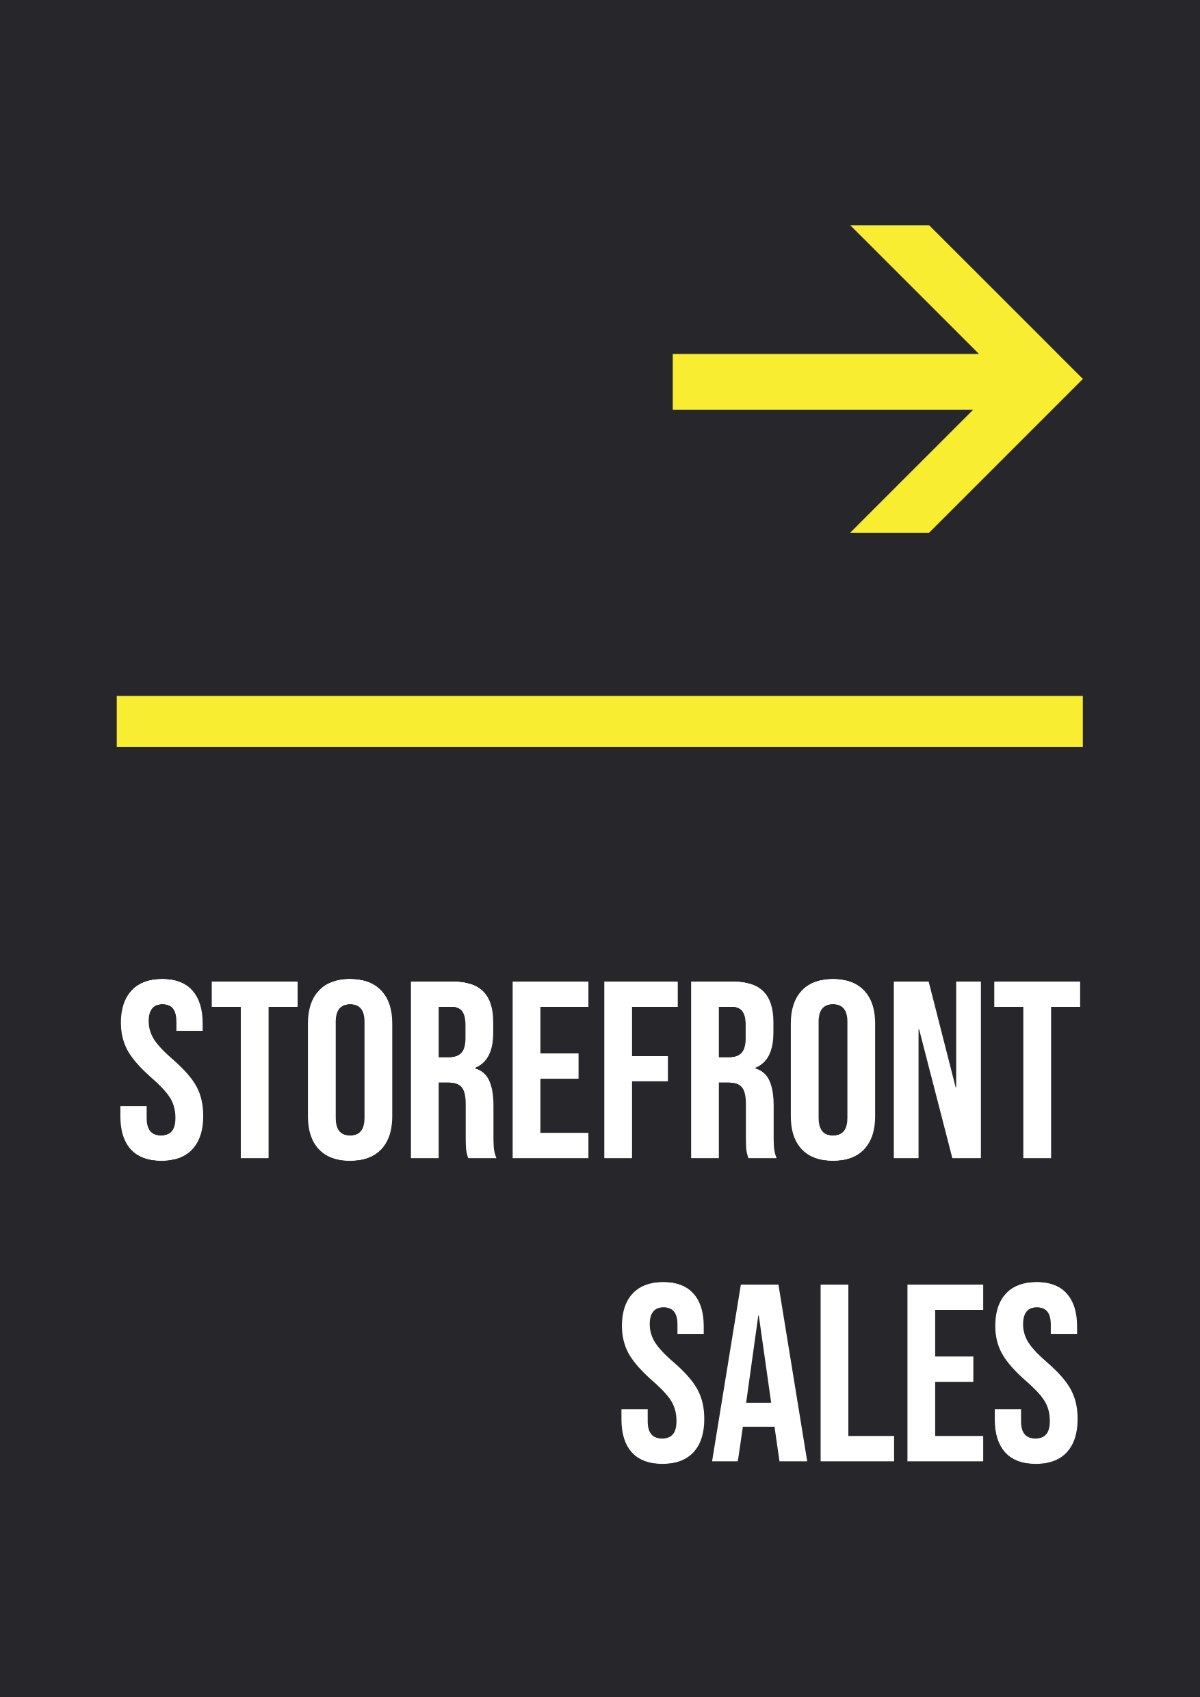 Storefront Sales Signage